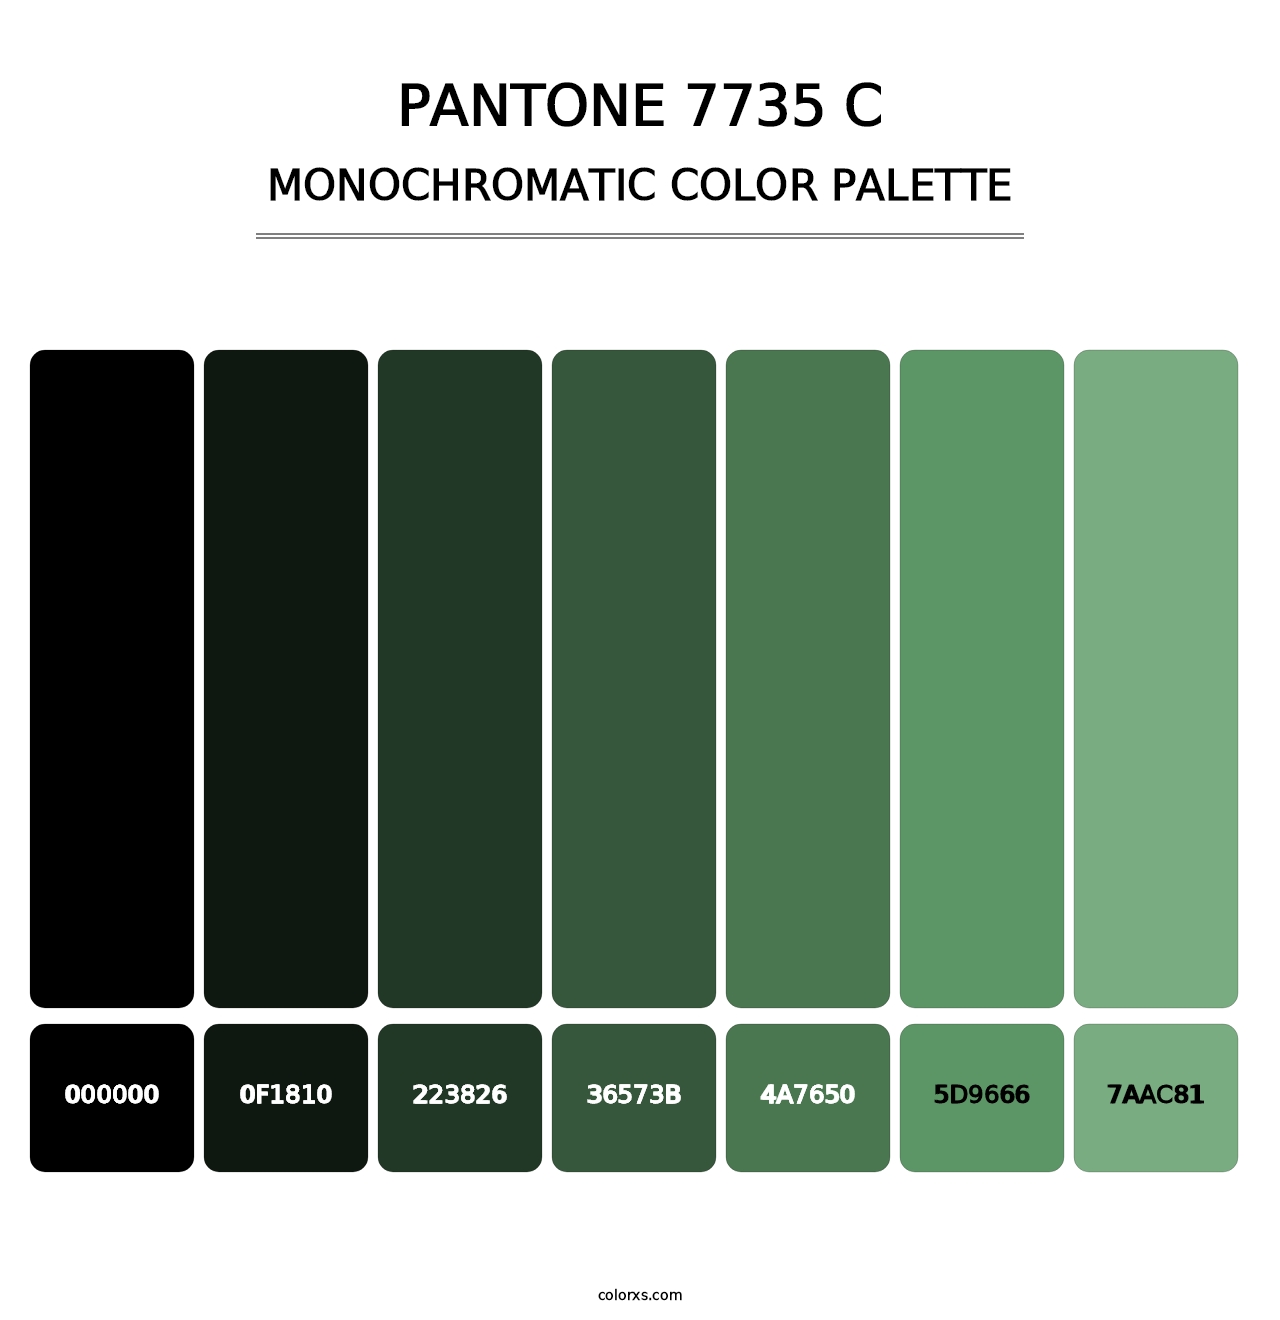 PANTONE 7735 C - Monochromatic Color Palette